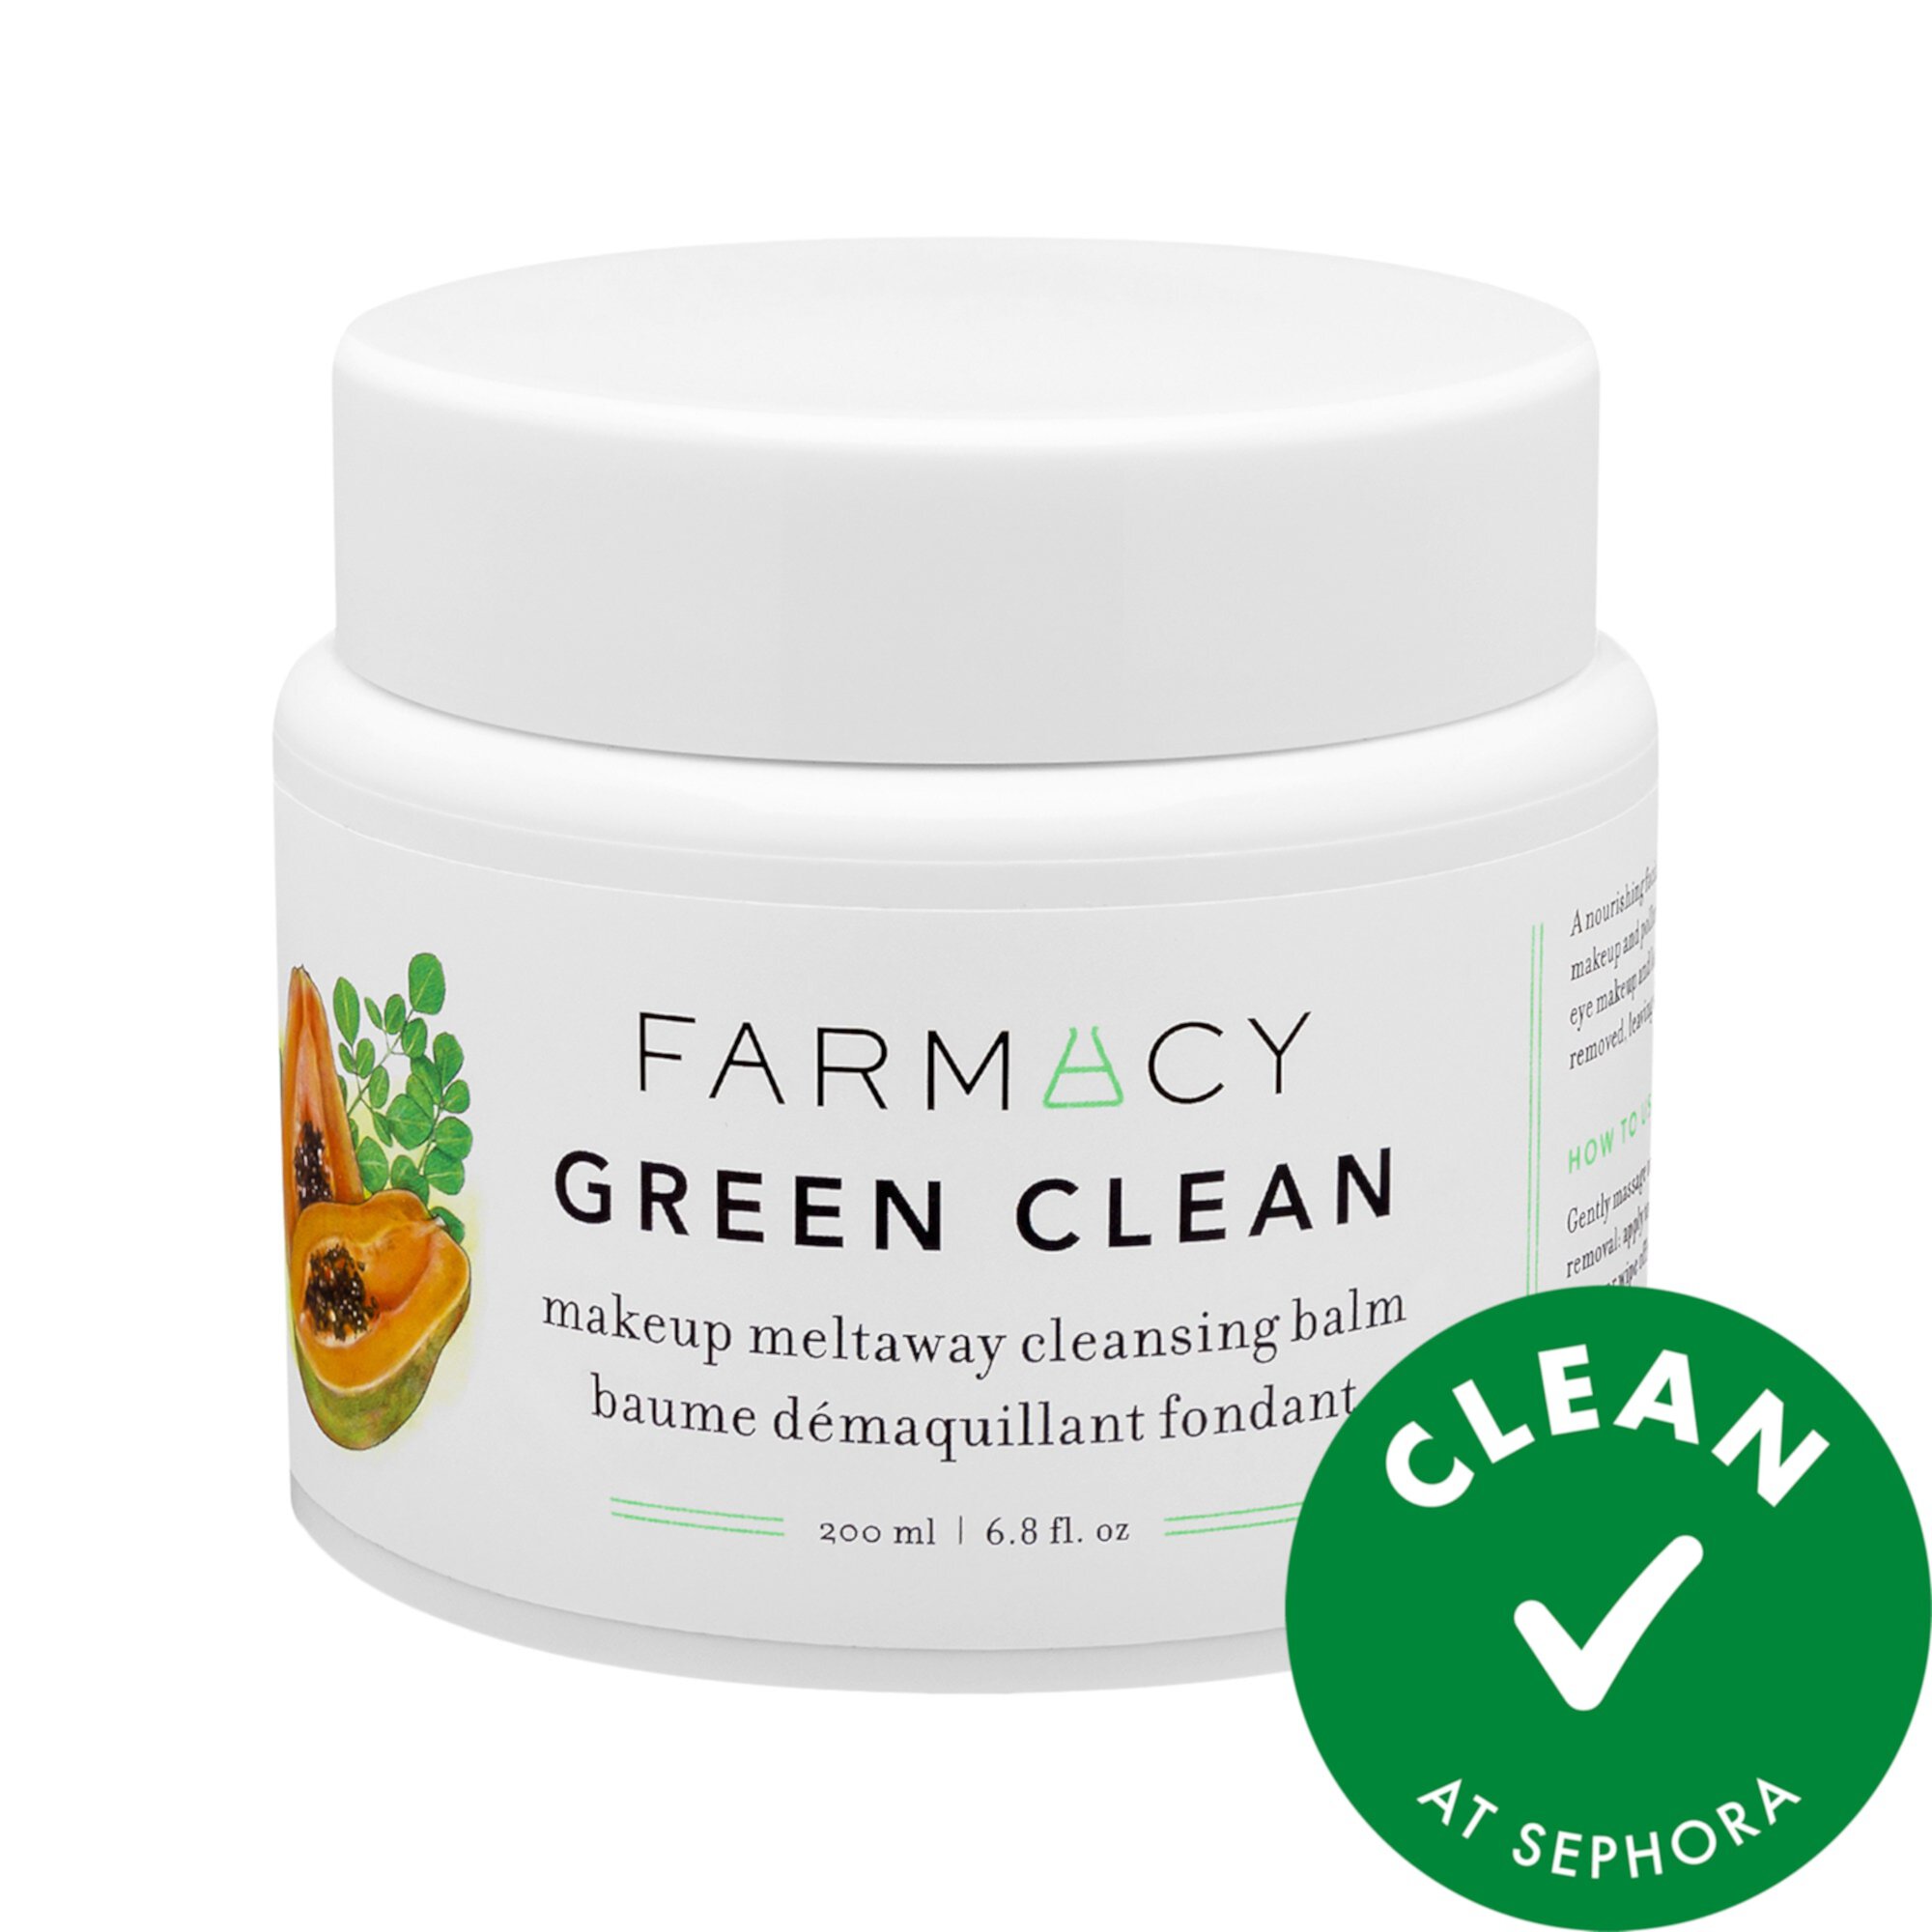 Green Clean Makeup Meltaway Очищающий бальзам, ограниченная серия Jumbo Farmacy